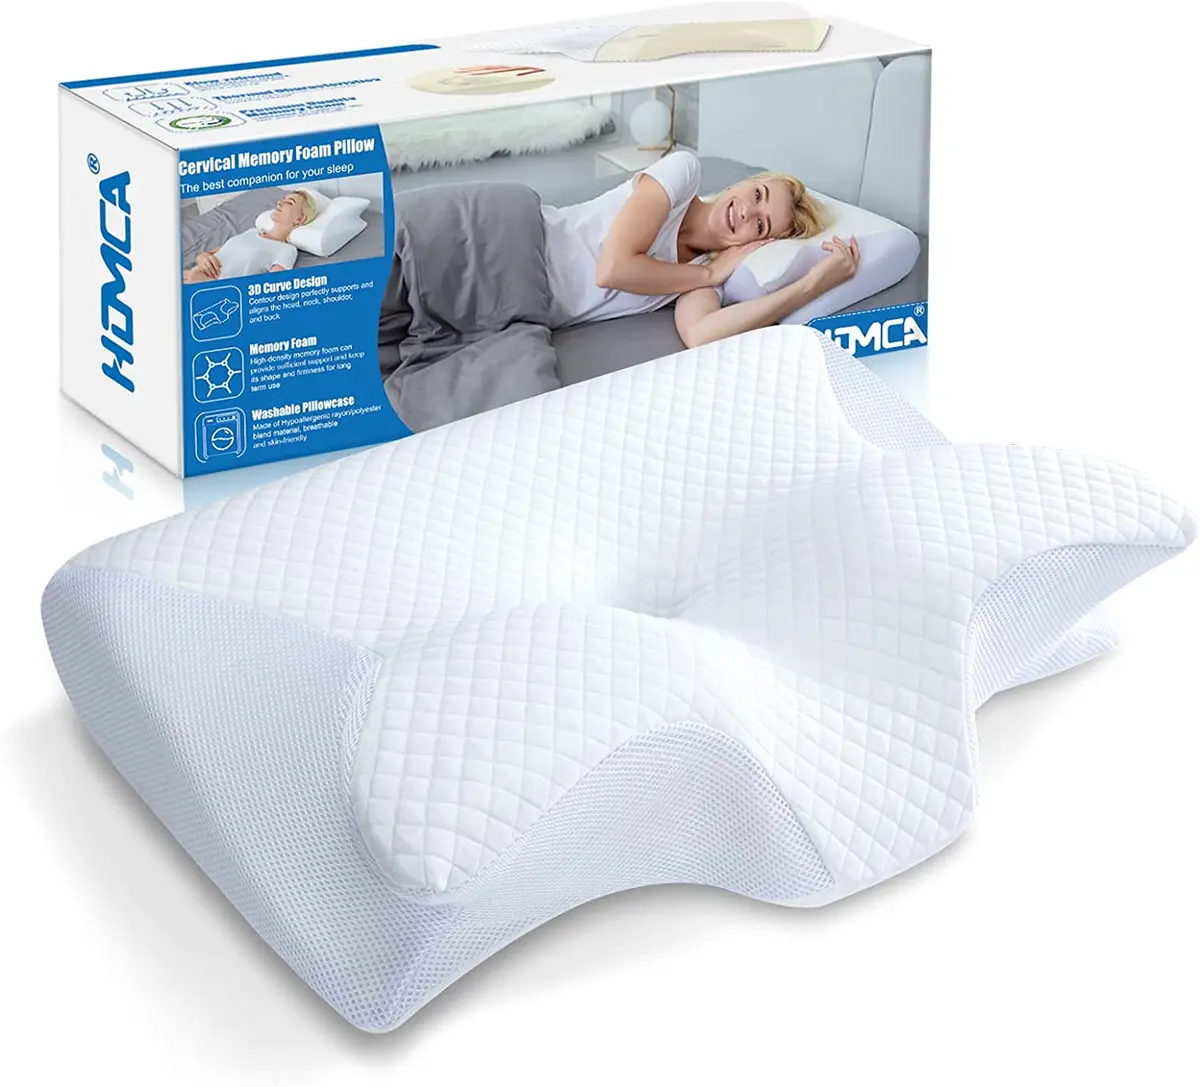 Soft Pillow Memory Foam Lumbar, Orthopedic Pillow Back